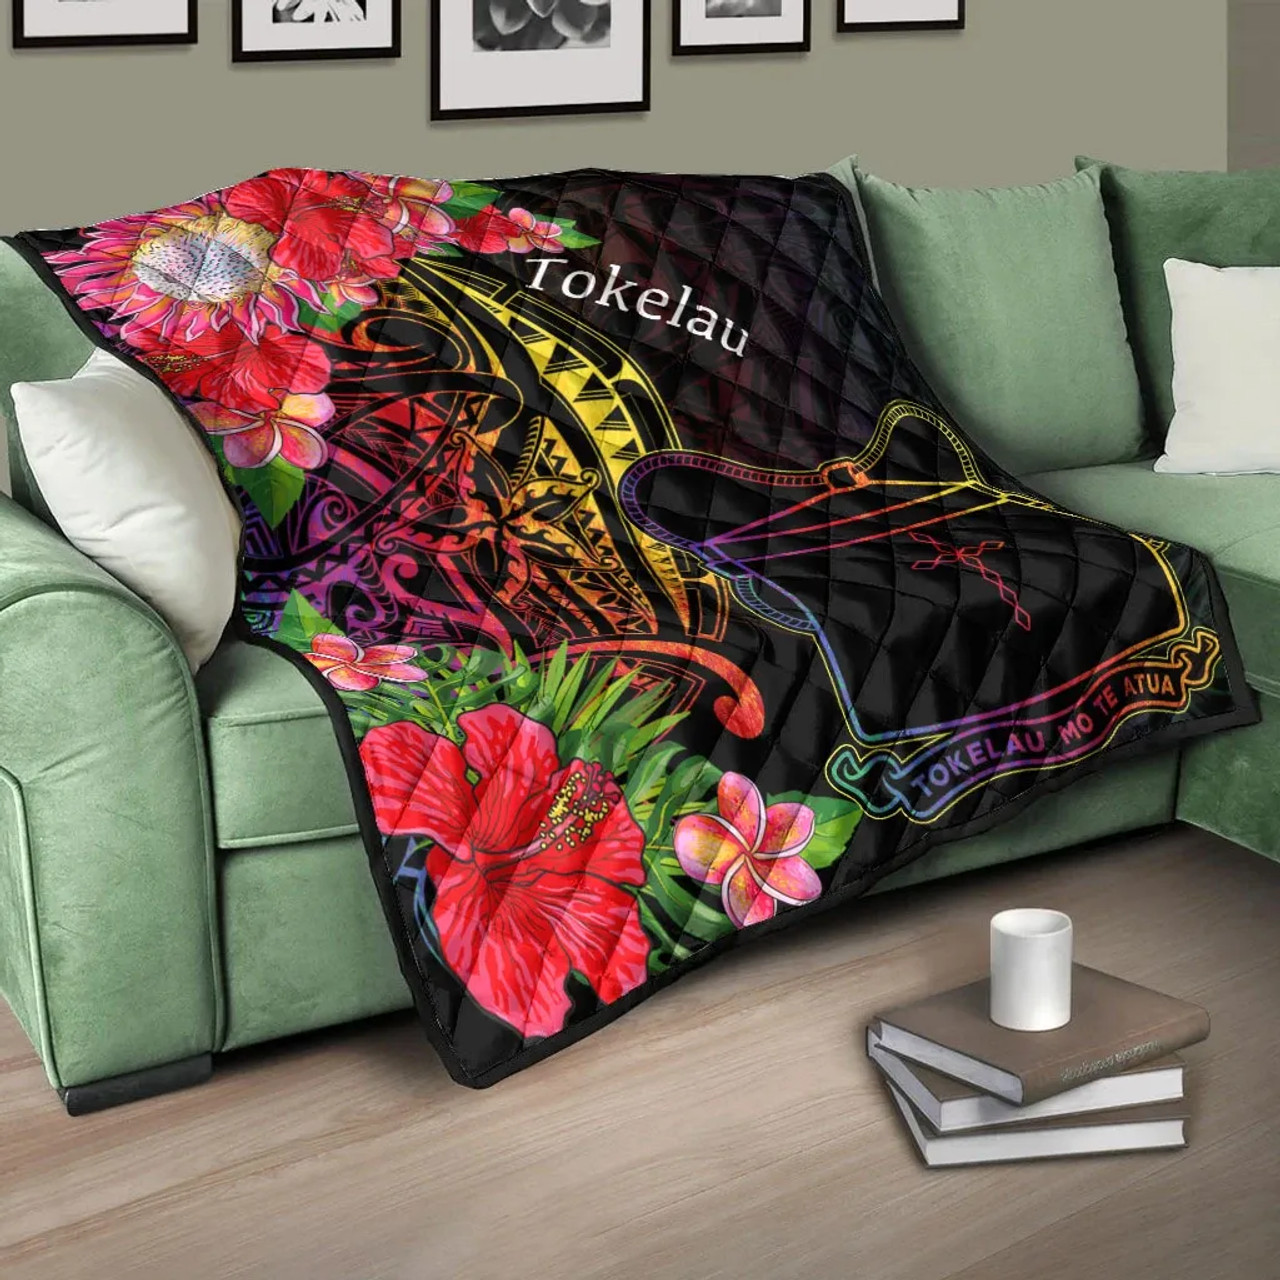 Tokelau Premium Quilt - Tropical Hippie Style 10